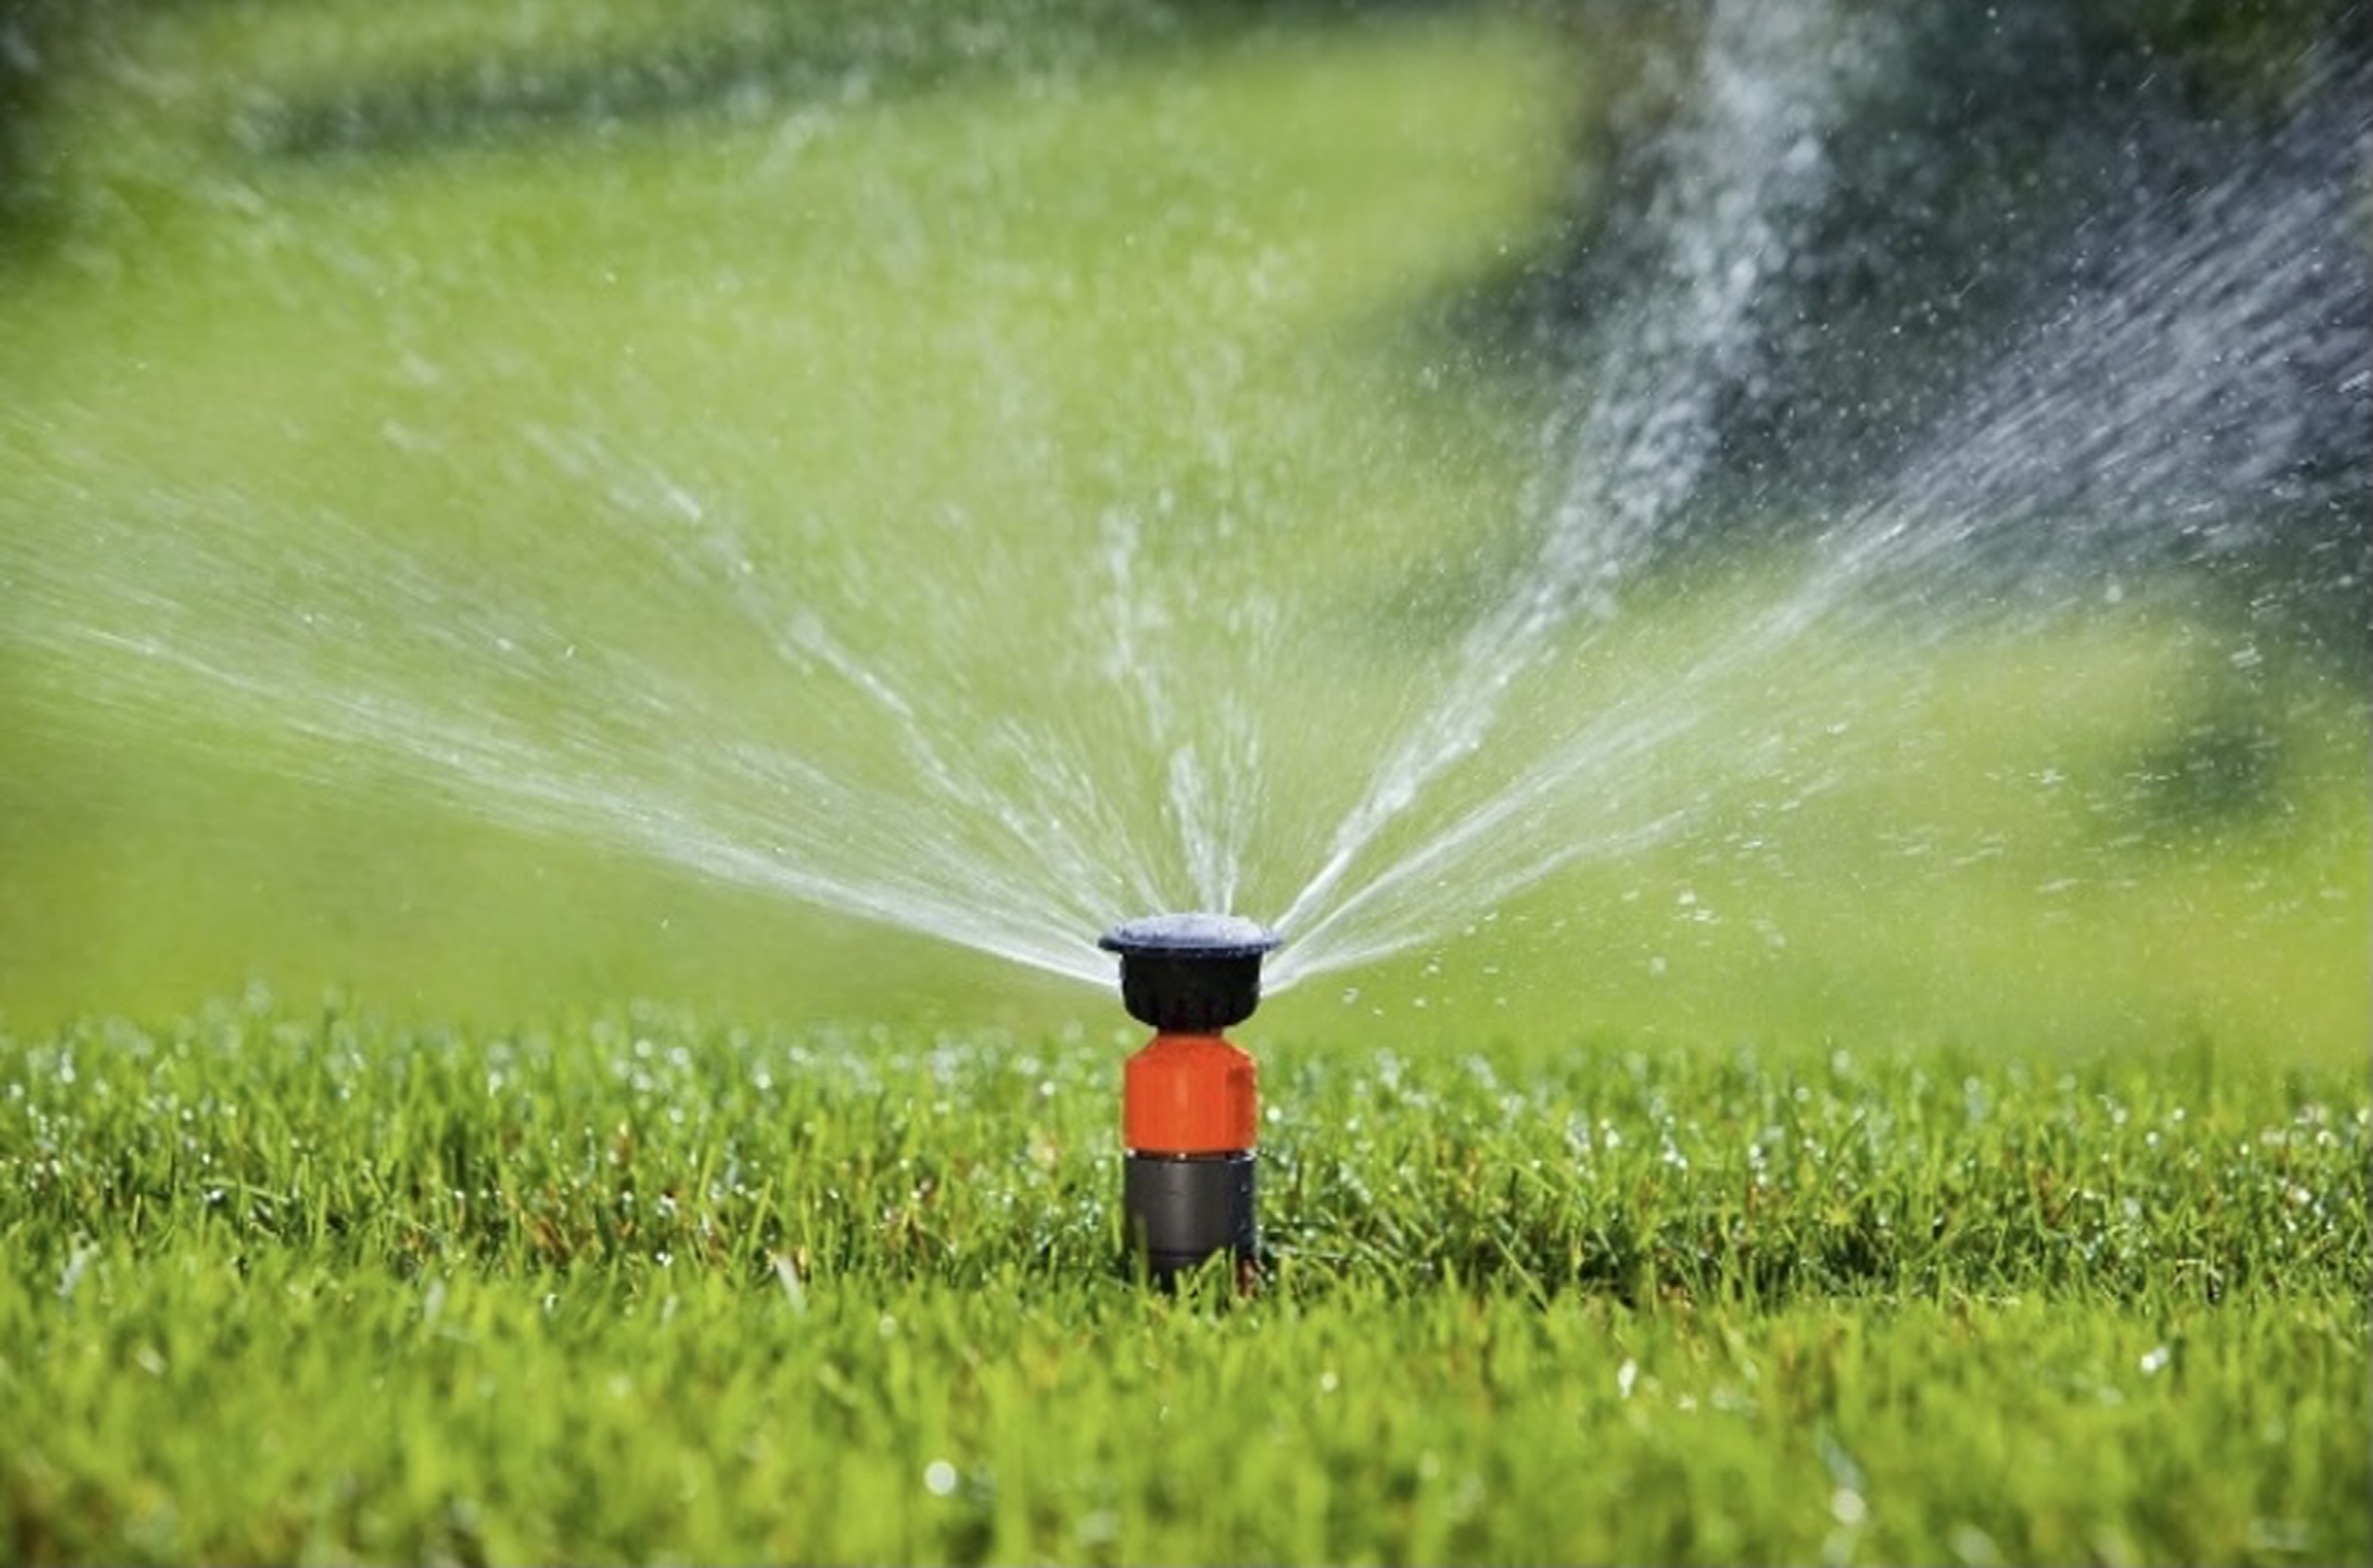 nhà thông minh bình dương điều khiển bơm nước sân vườn thông minh